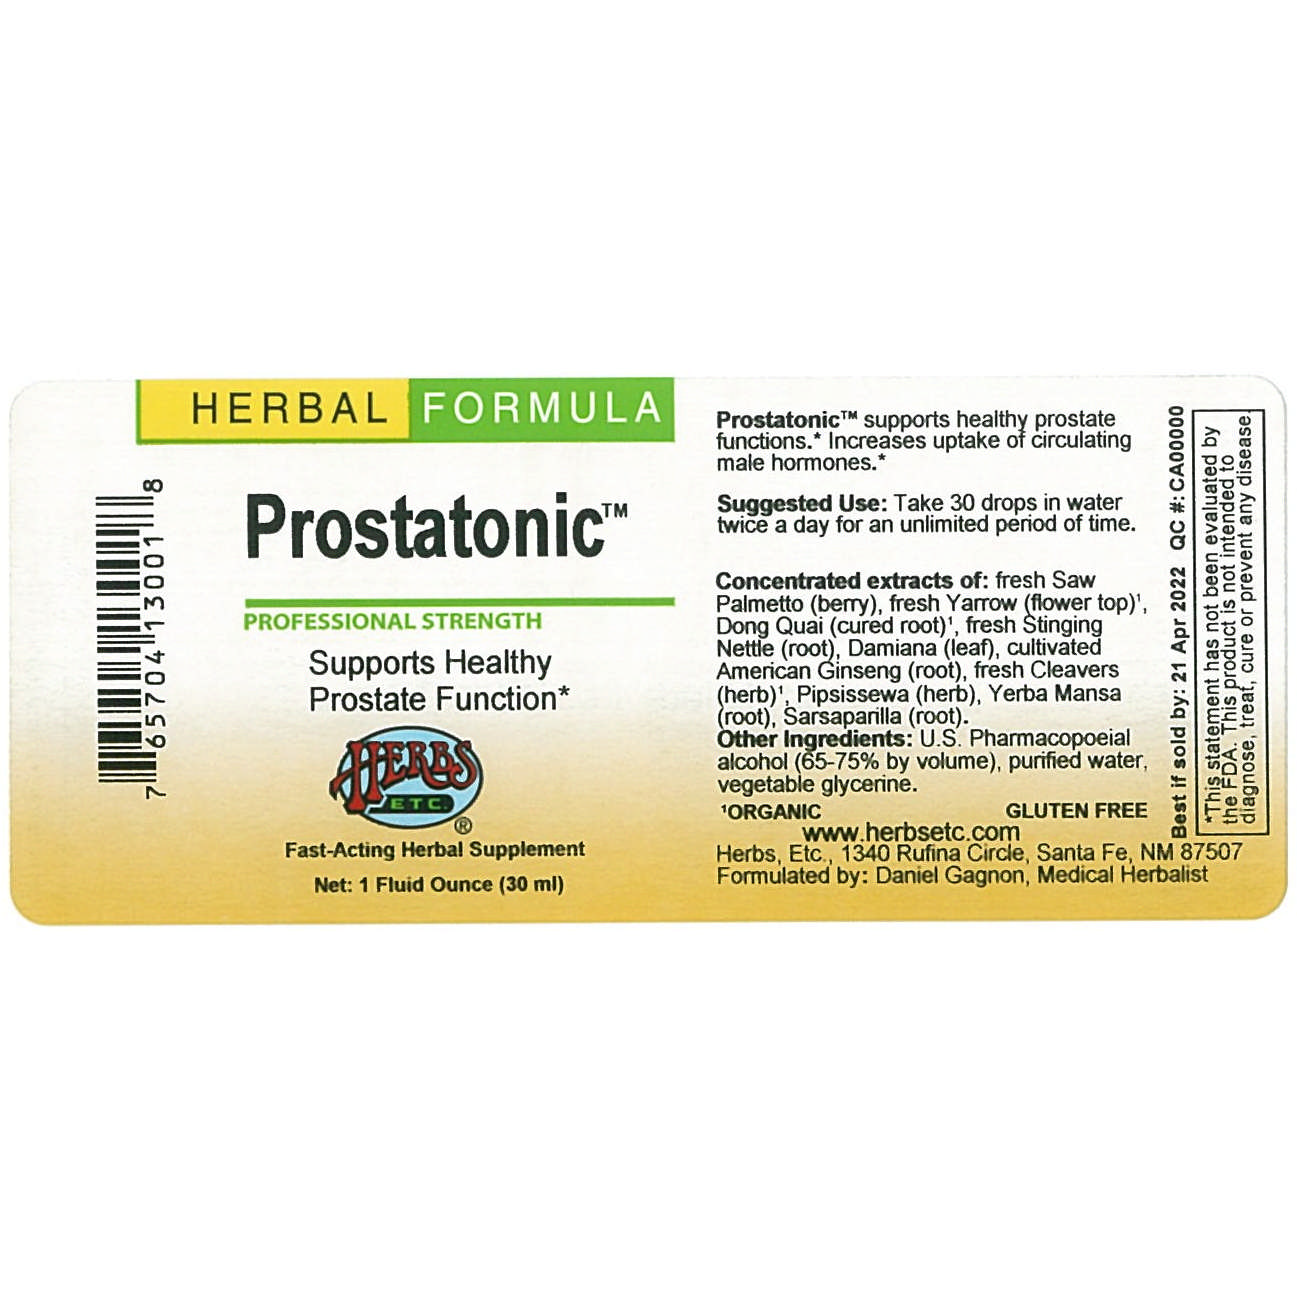 Herbs Etc - Prostatonic (S P/Damia)